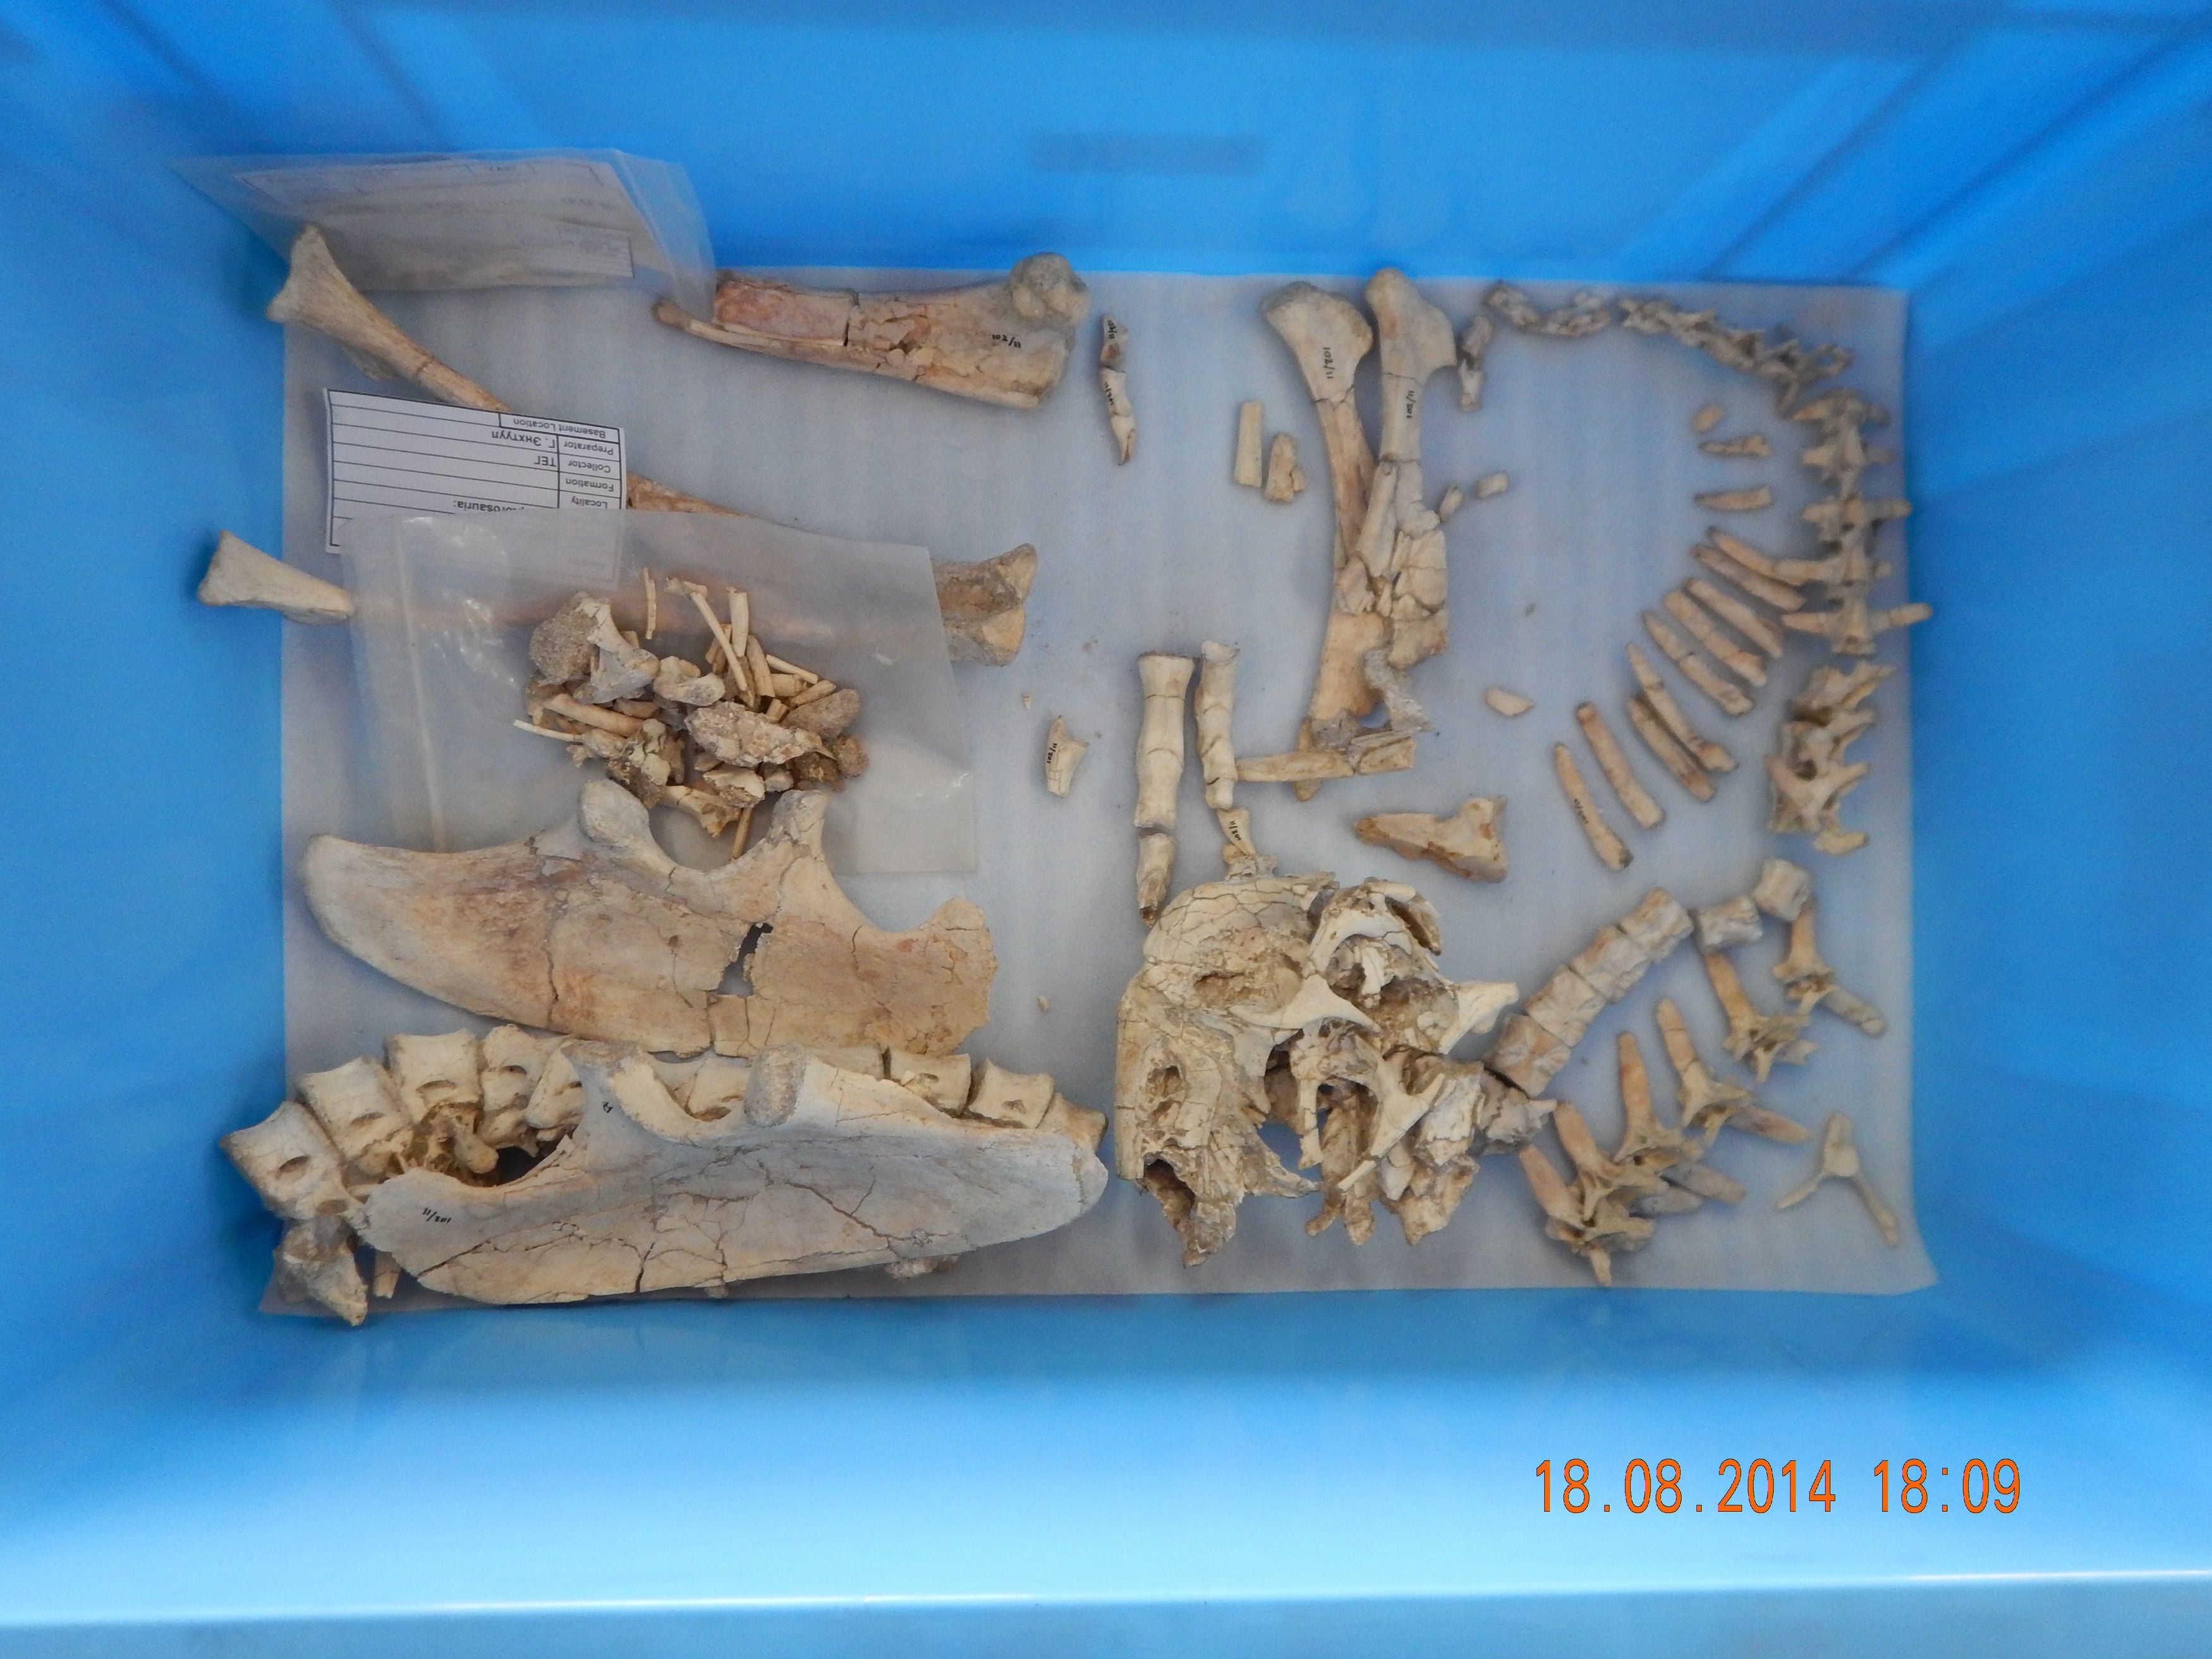 Bones from the newly discovered species Oksoko avarsan